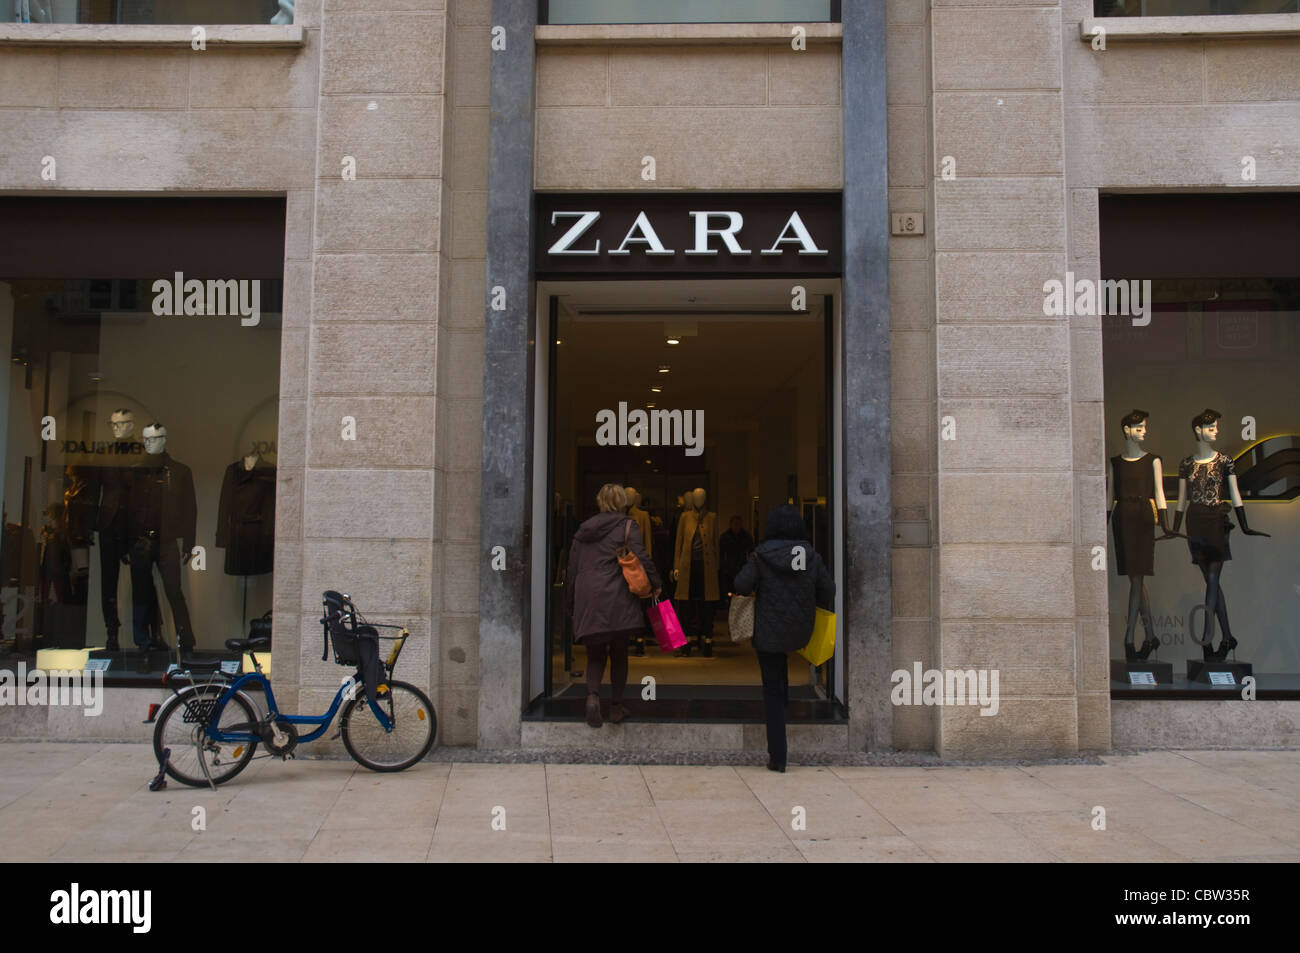 Zara shop alogn Via Mazzini street old town Verona the Veneto region  northern Italy Europe Stock Photo - Alamy